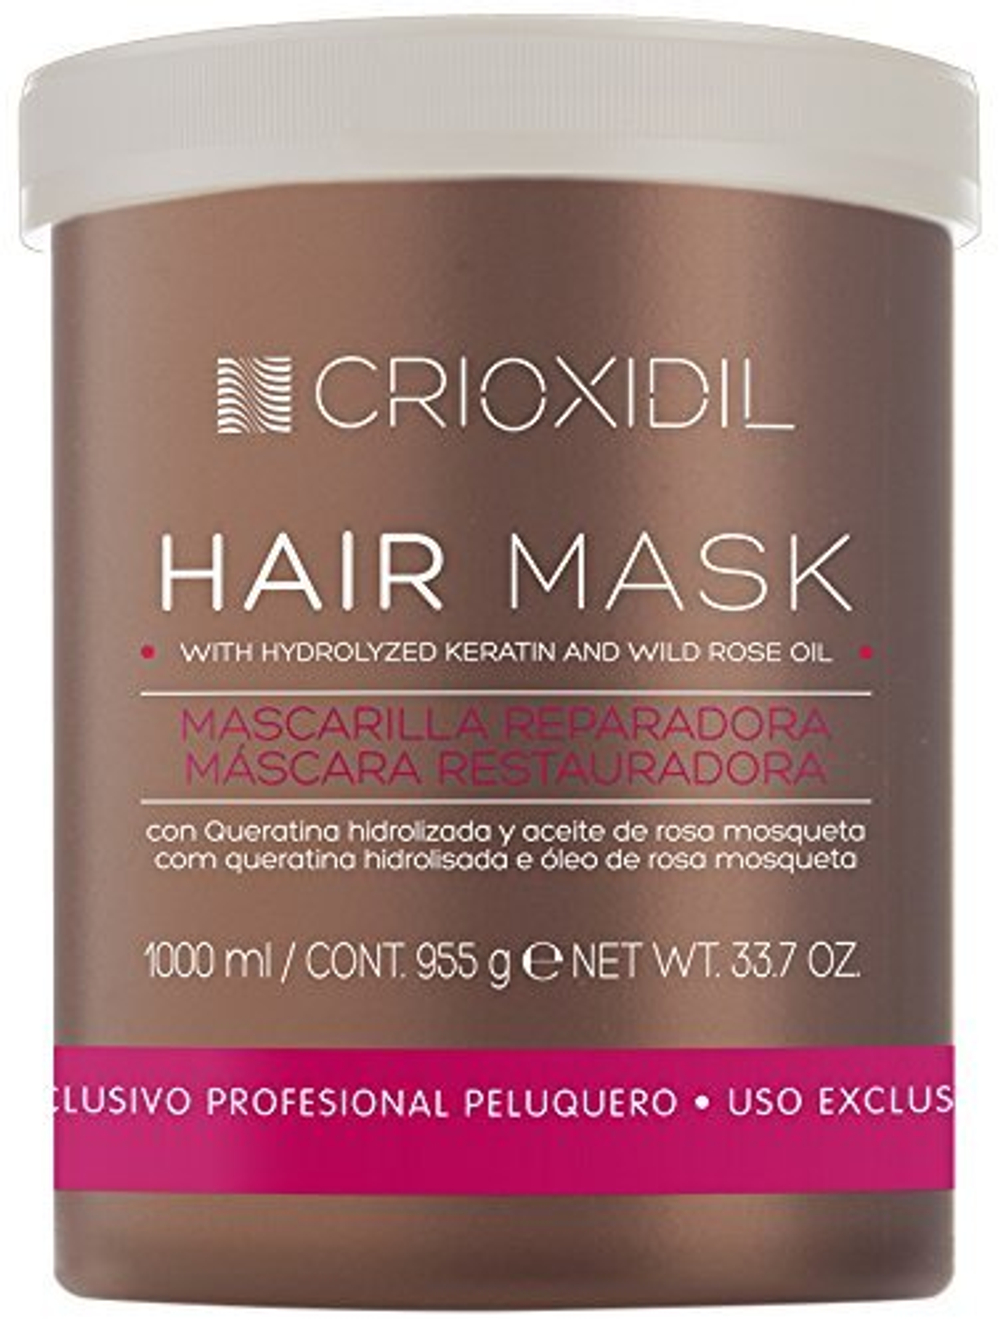 Маска для сухих и поврежденных волос Crioxidil